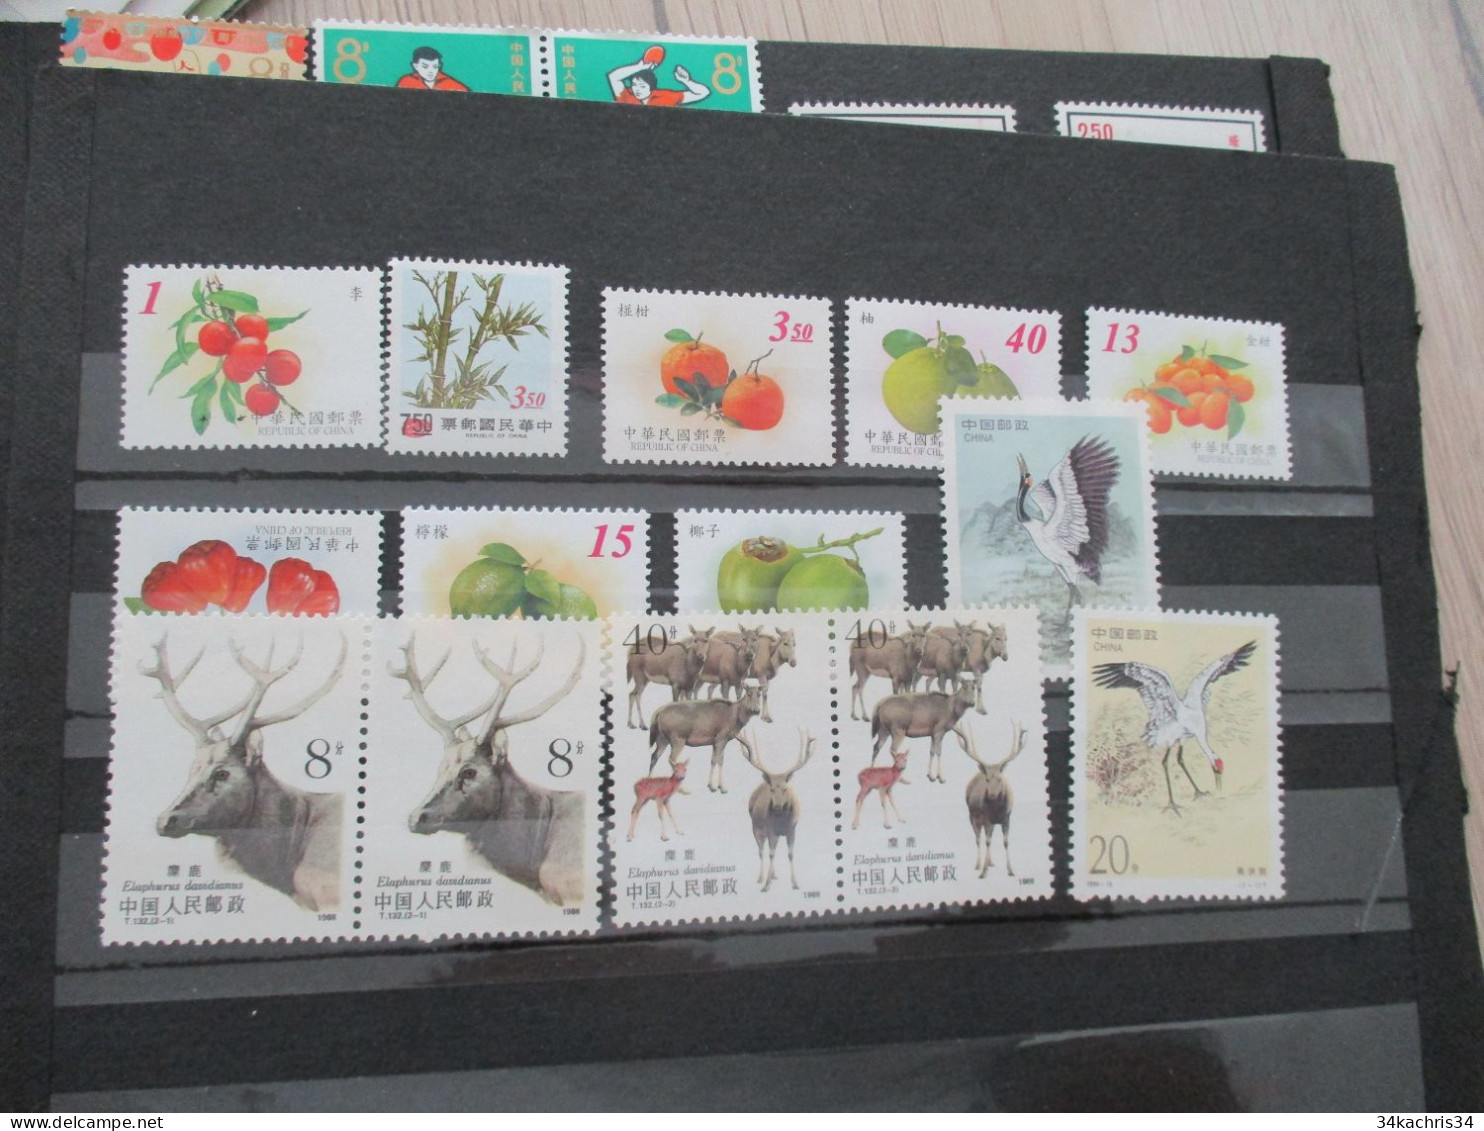 Chine China Lot timbres bloc lettres premiers jours à découvrir!!!!